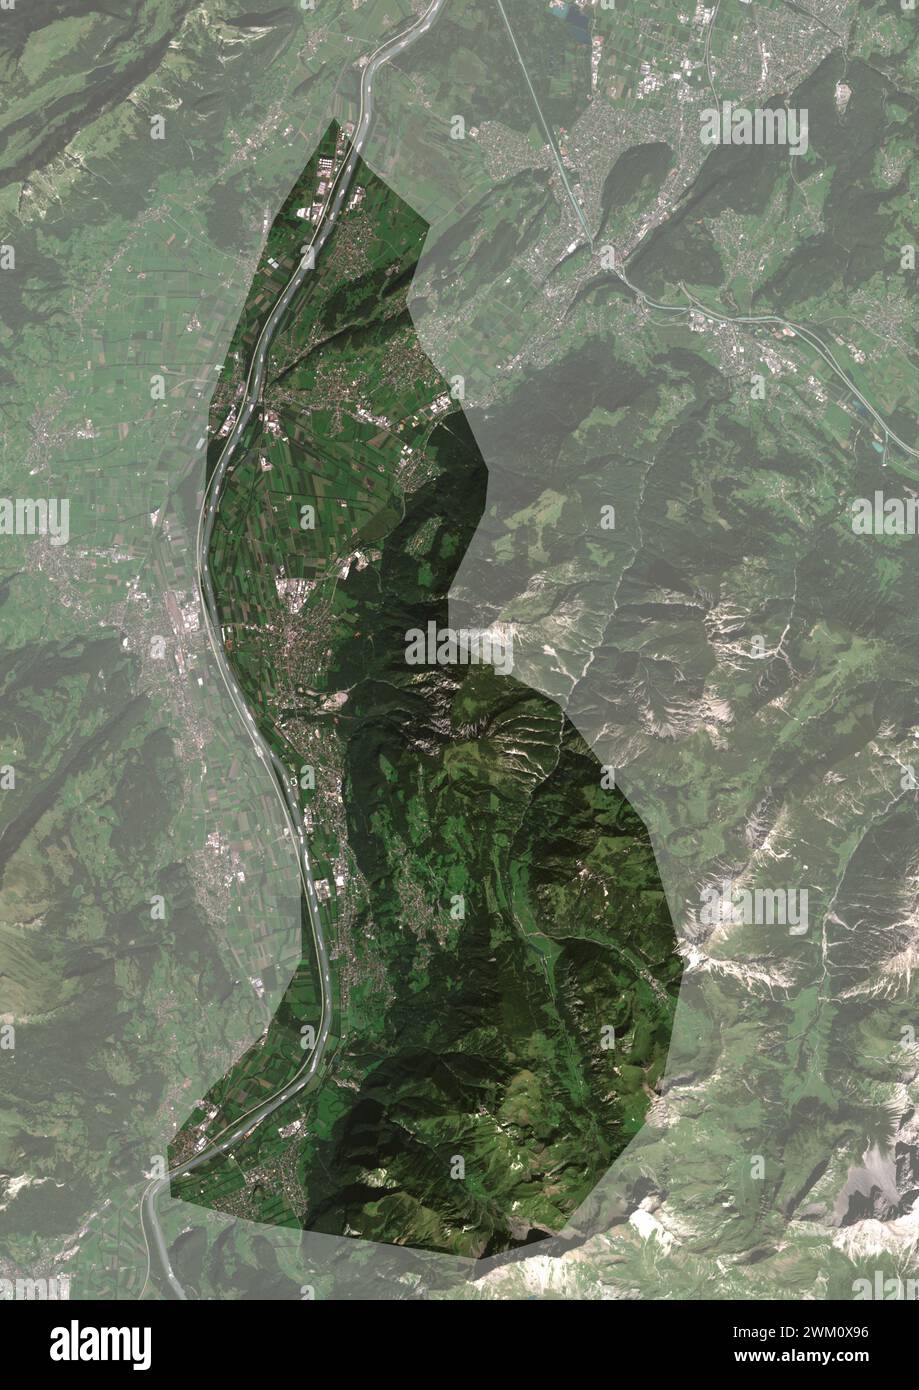 Immagine satellitare a colori del Liechtenstein, con maschera. Foto Stock